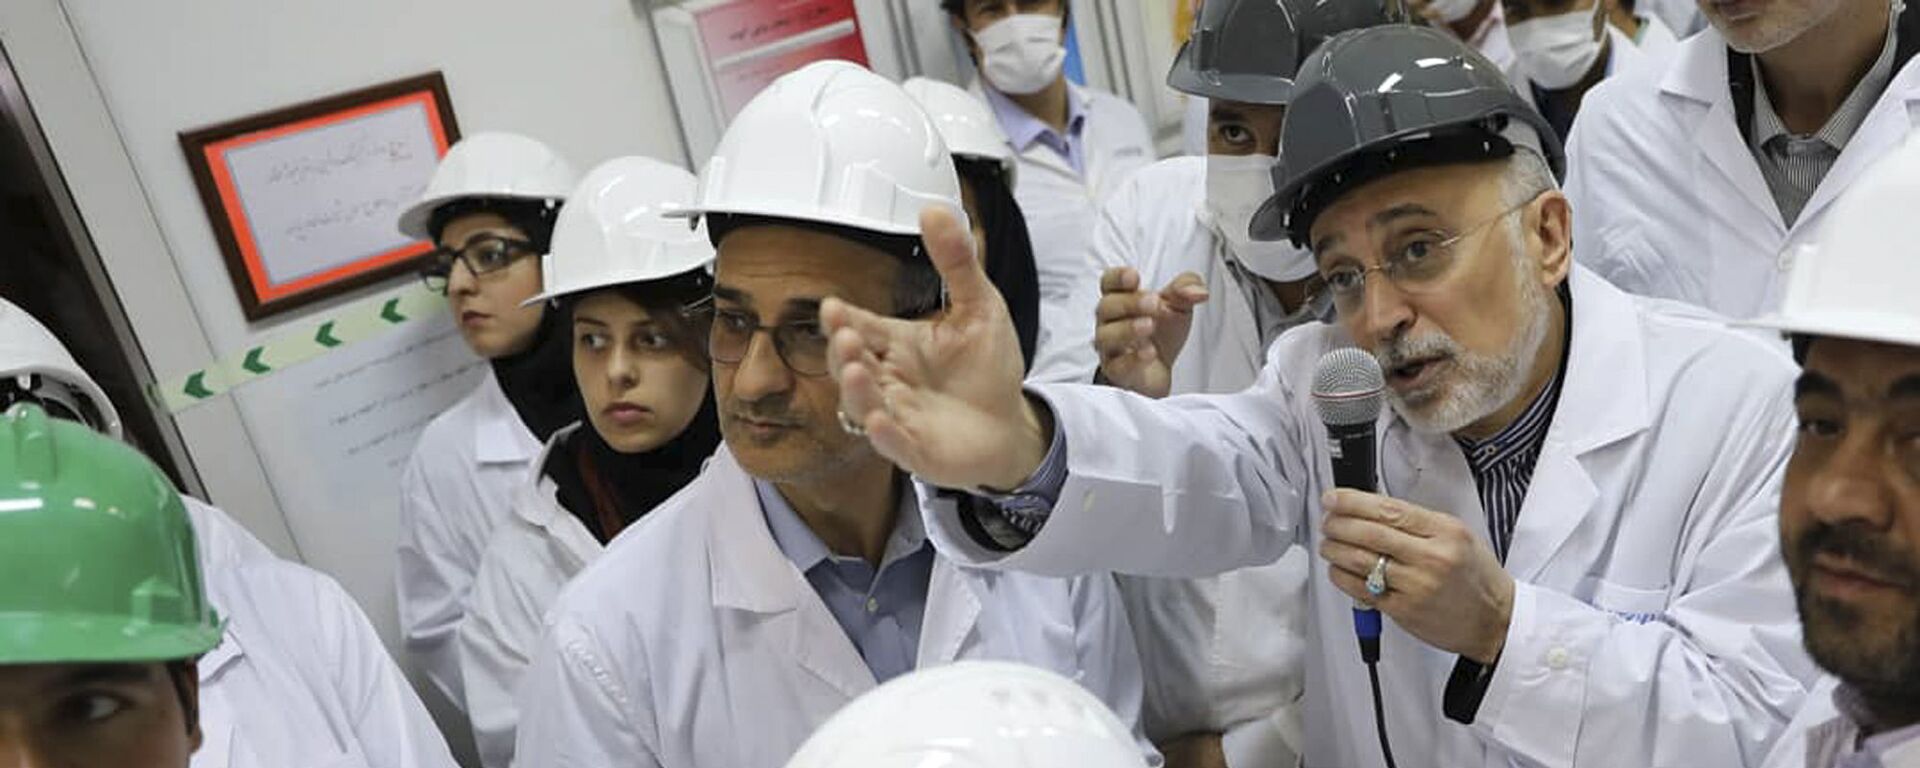 علي أكبر صالحي رئيس منظمة الطاقة النووية الإيرانية يتحدث مع وسائل الإعلام أثناء زيارته لمرفق تخصيب نطنز وسط إيران - سبوتنيك عربي, 1920, 18.02.2021